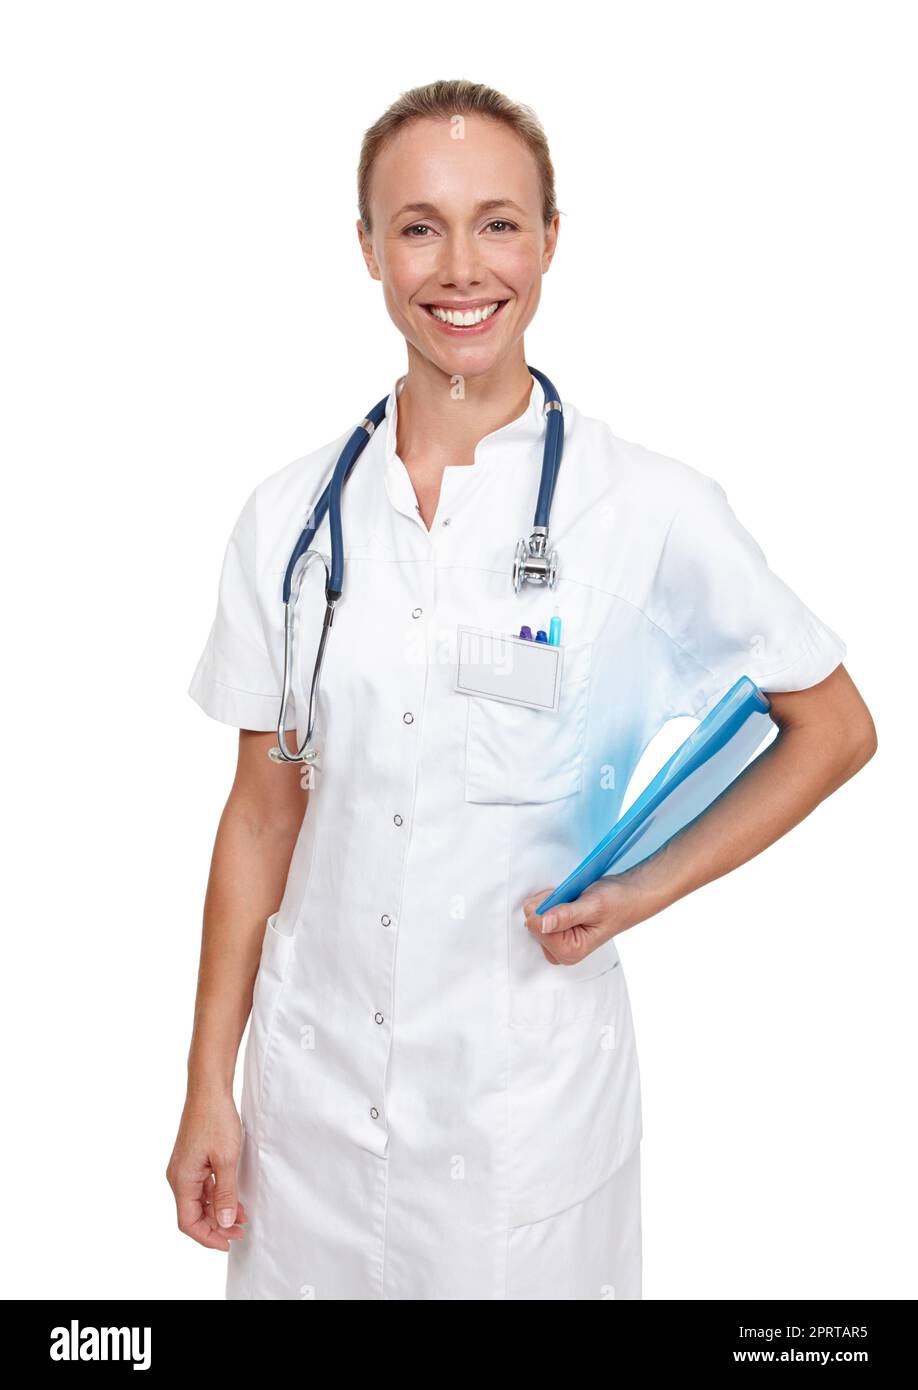 Sie hat eine großartige Art am Bett. Studioaufnahme einer jungen Krankenschwester, die einen blauen Ordner in der Hand hält. Stockfoto